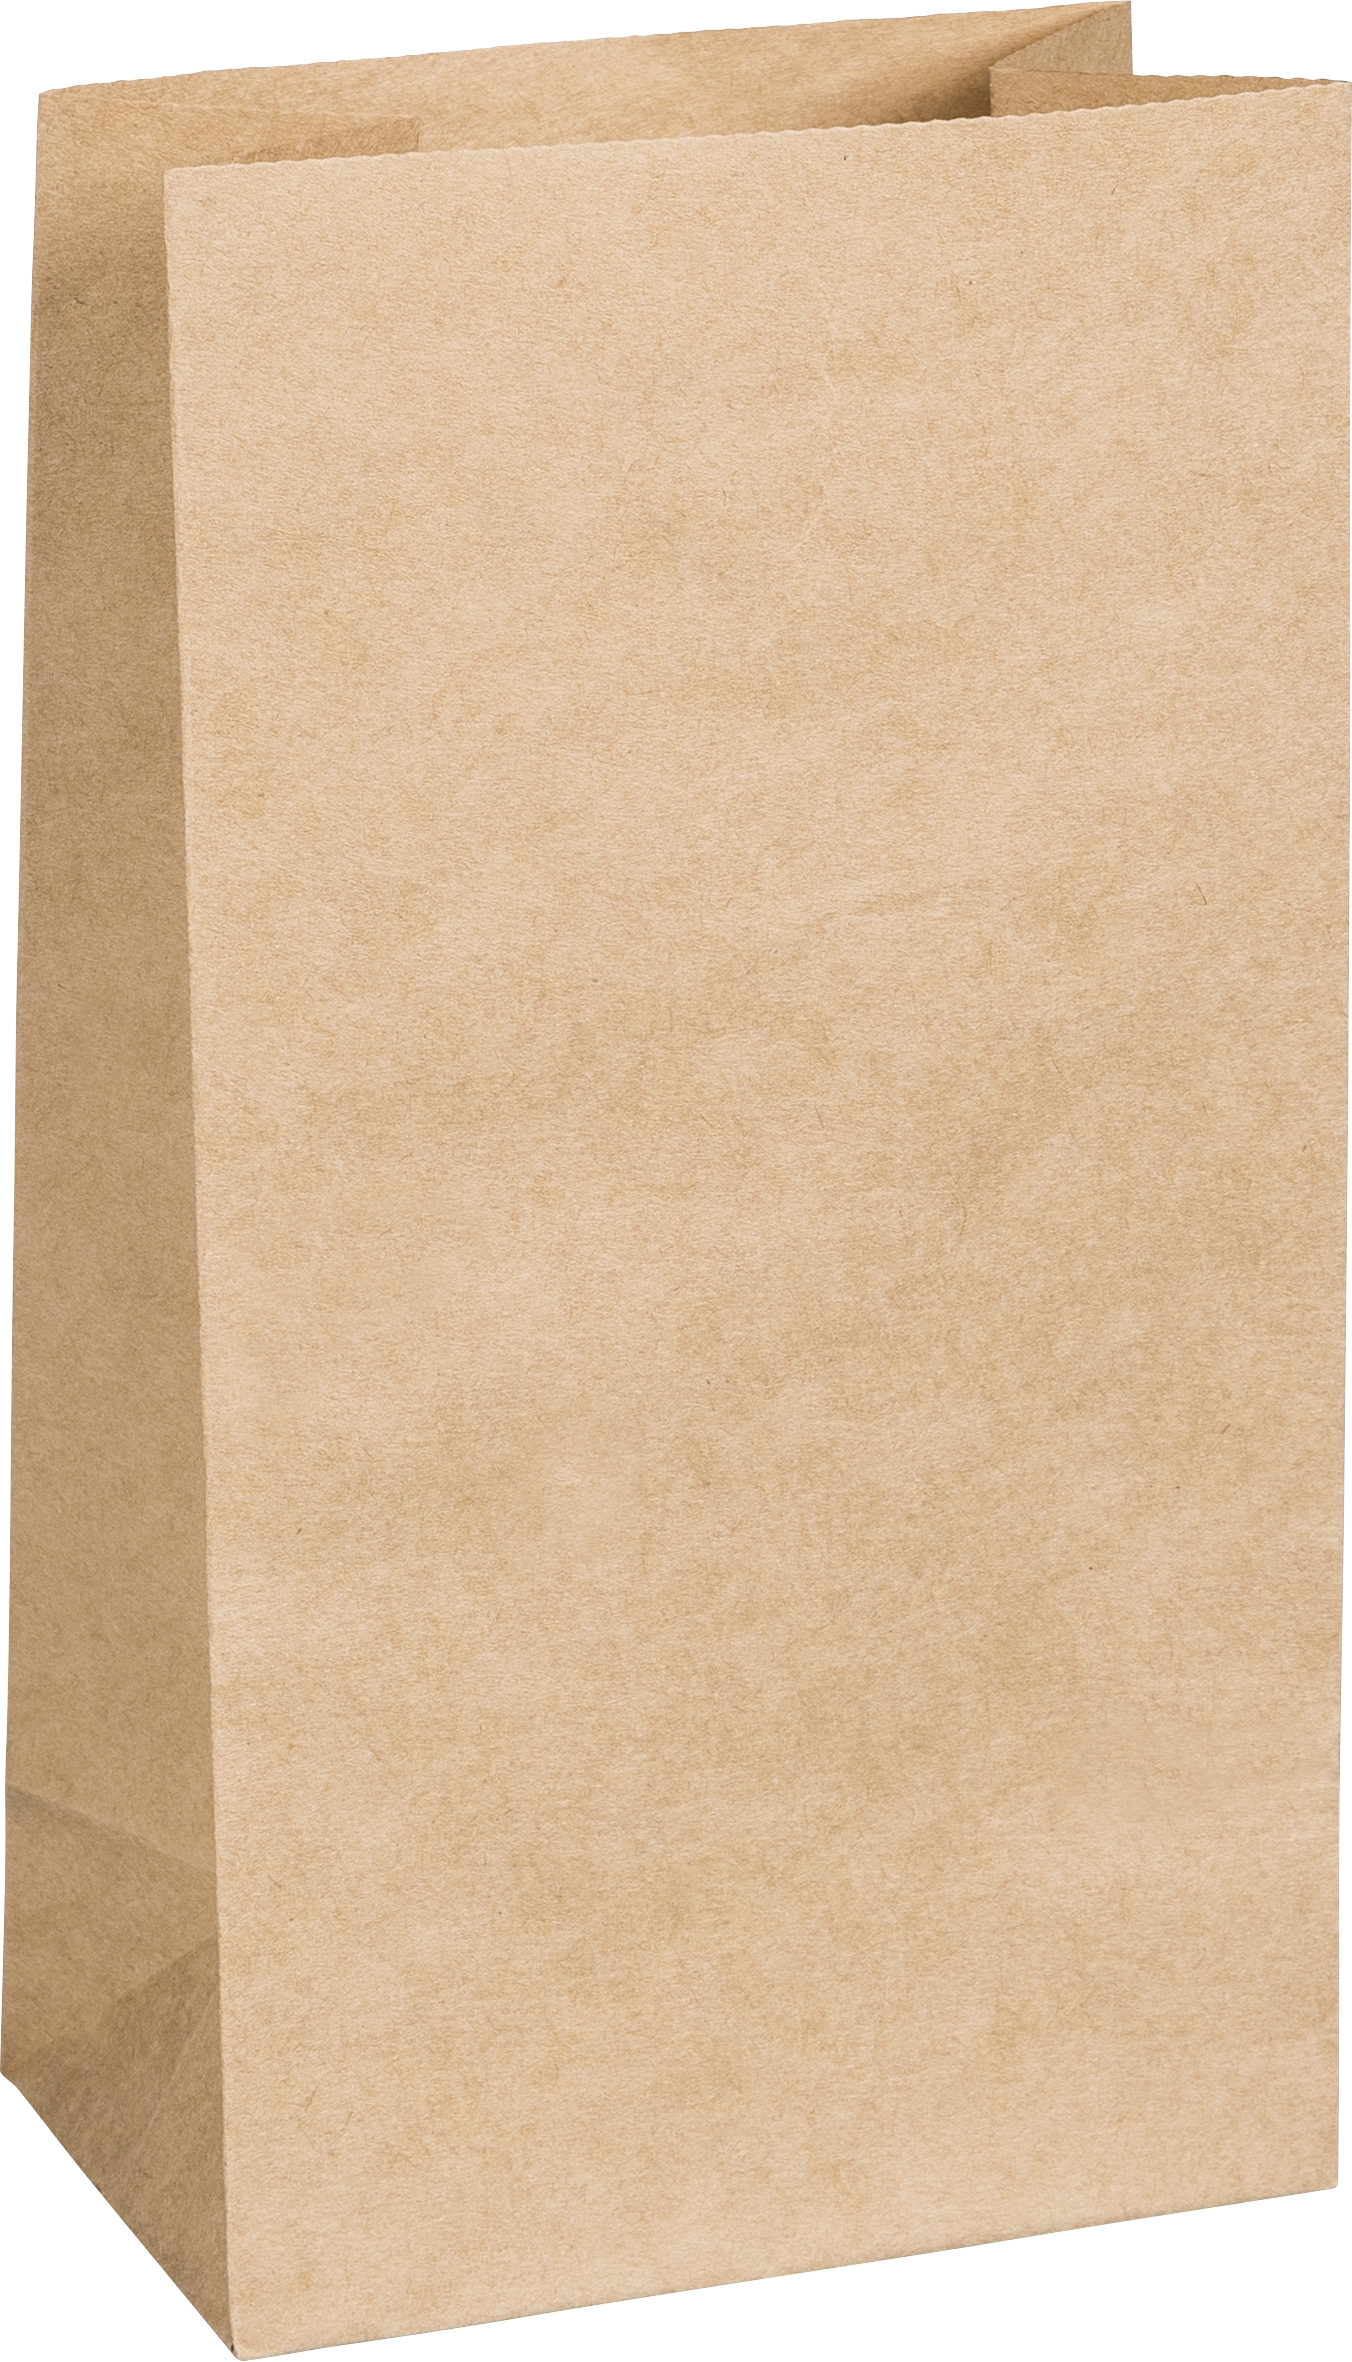 Papier-Bodenbeutel Kraftpapier 10x5,5x17,5cm 25 Stück lebensmittelecht 